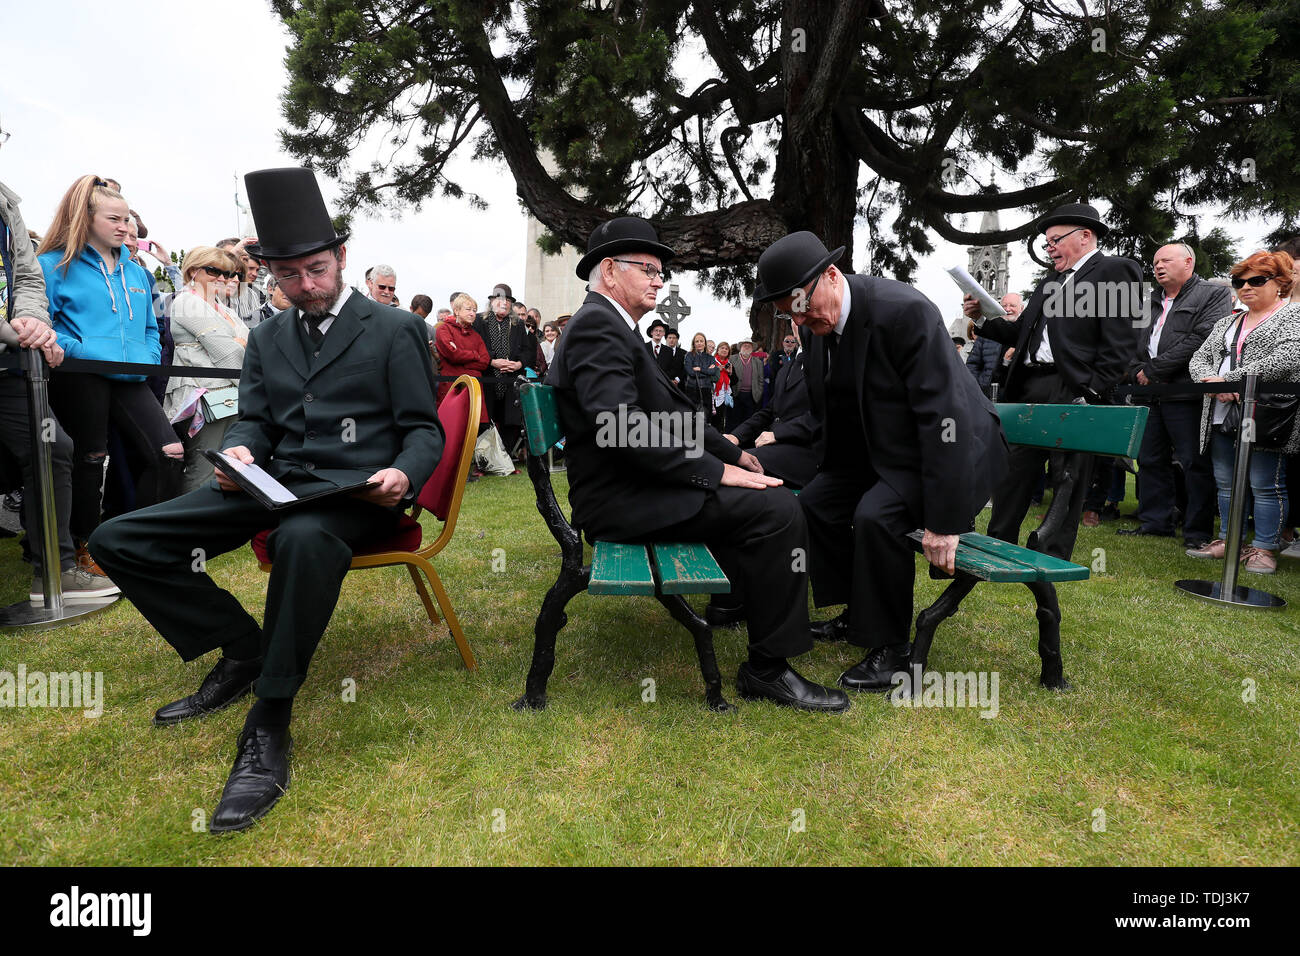 Membri del ÔJoyceanstagers all'evento annuale Bloomsday al Glasnevin Cemetery, Dublino, durante il loro reenactment dal capitolo "Hades" di James Joyce Ulysses. Foto Stock